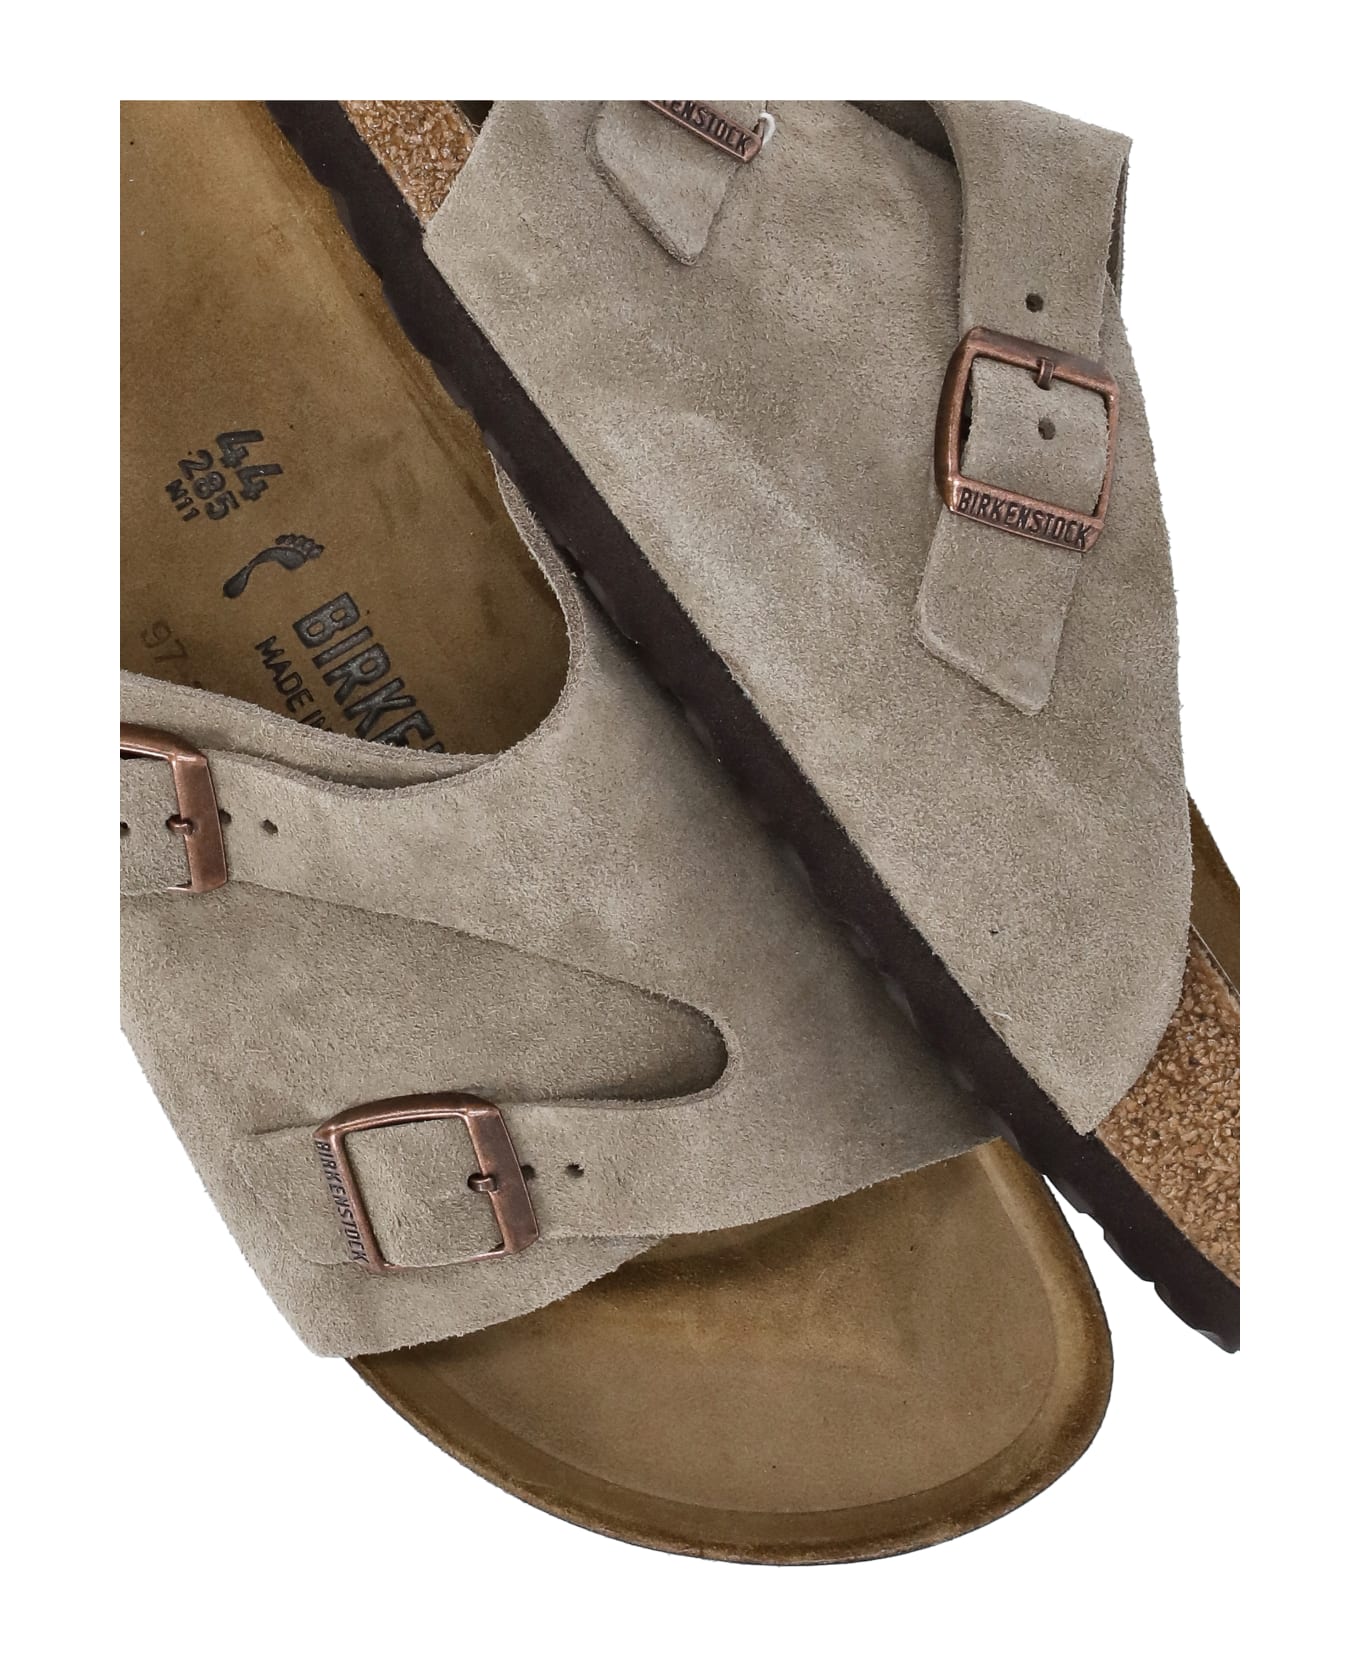 Birkenstock Zurich Bs Sandals - NEUTRALS